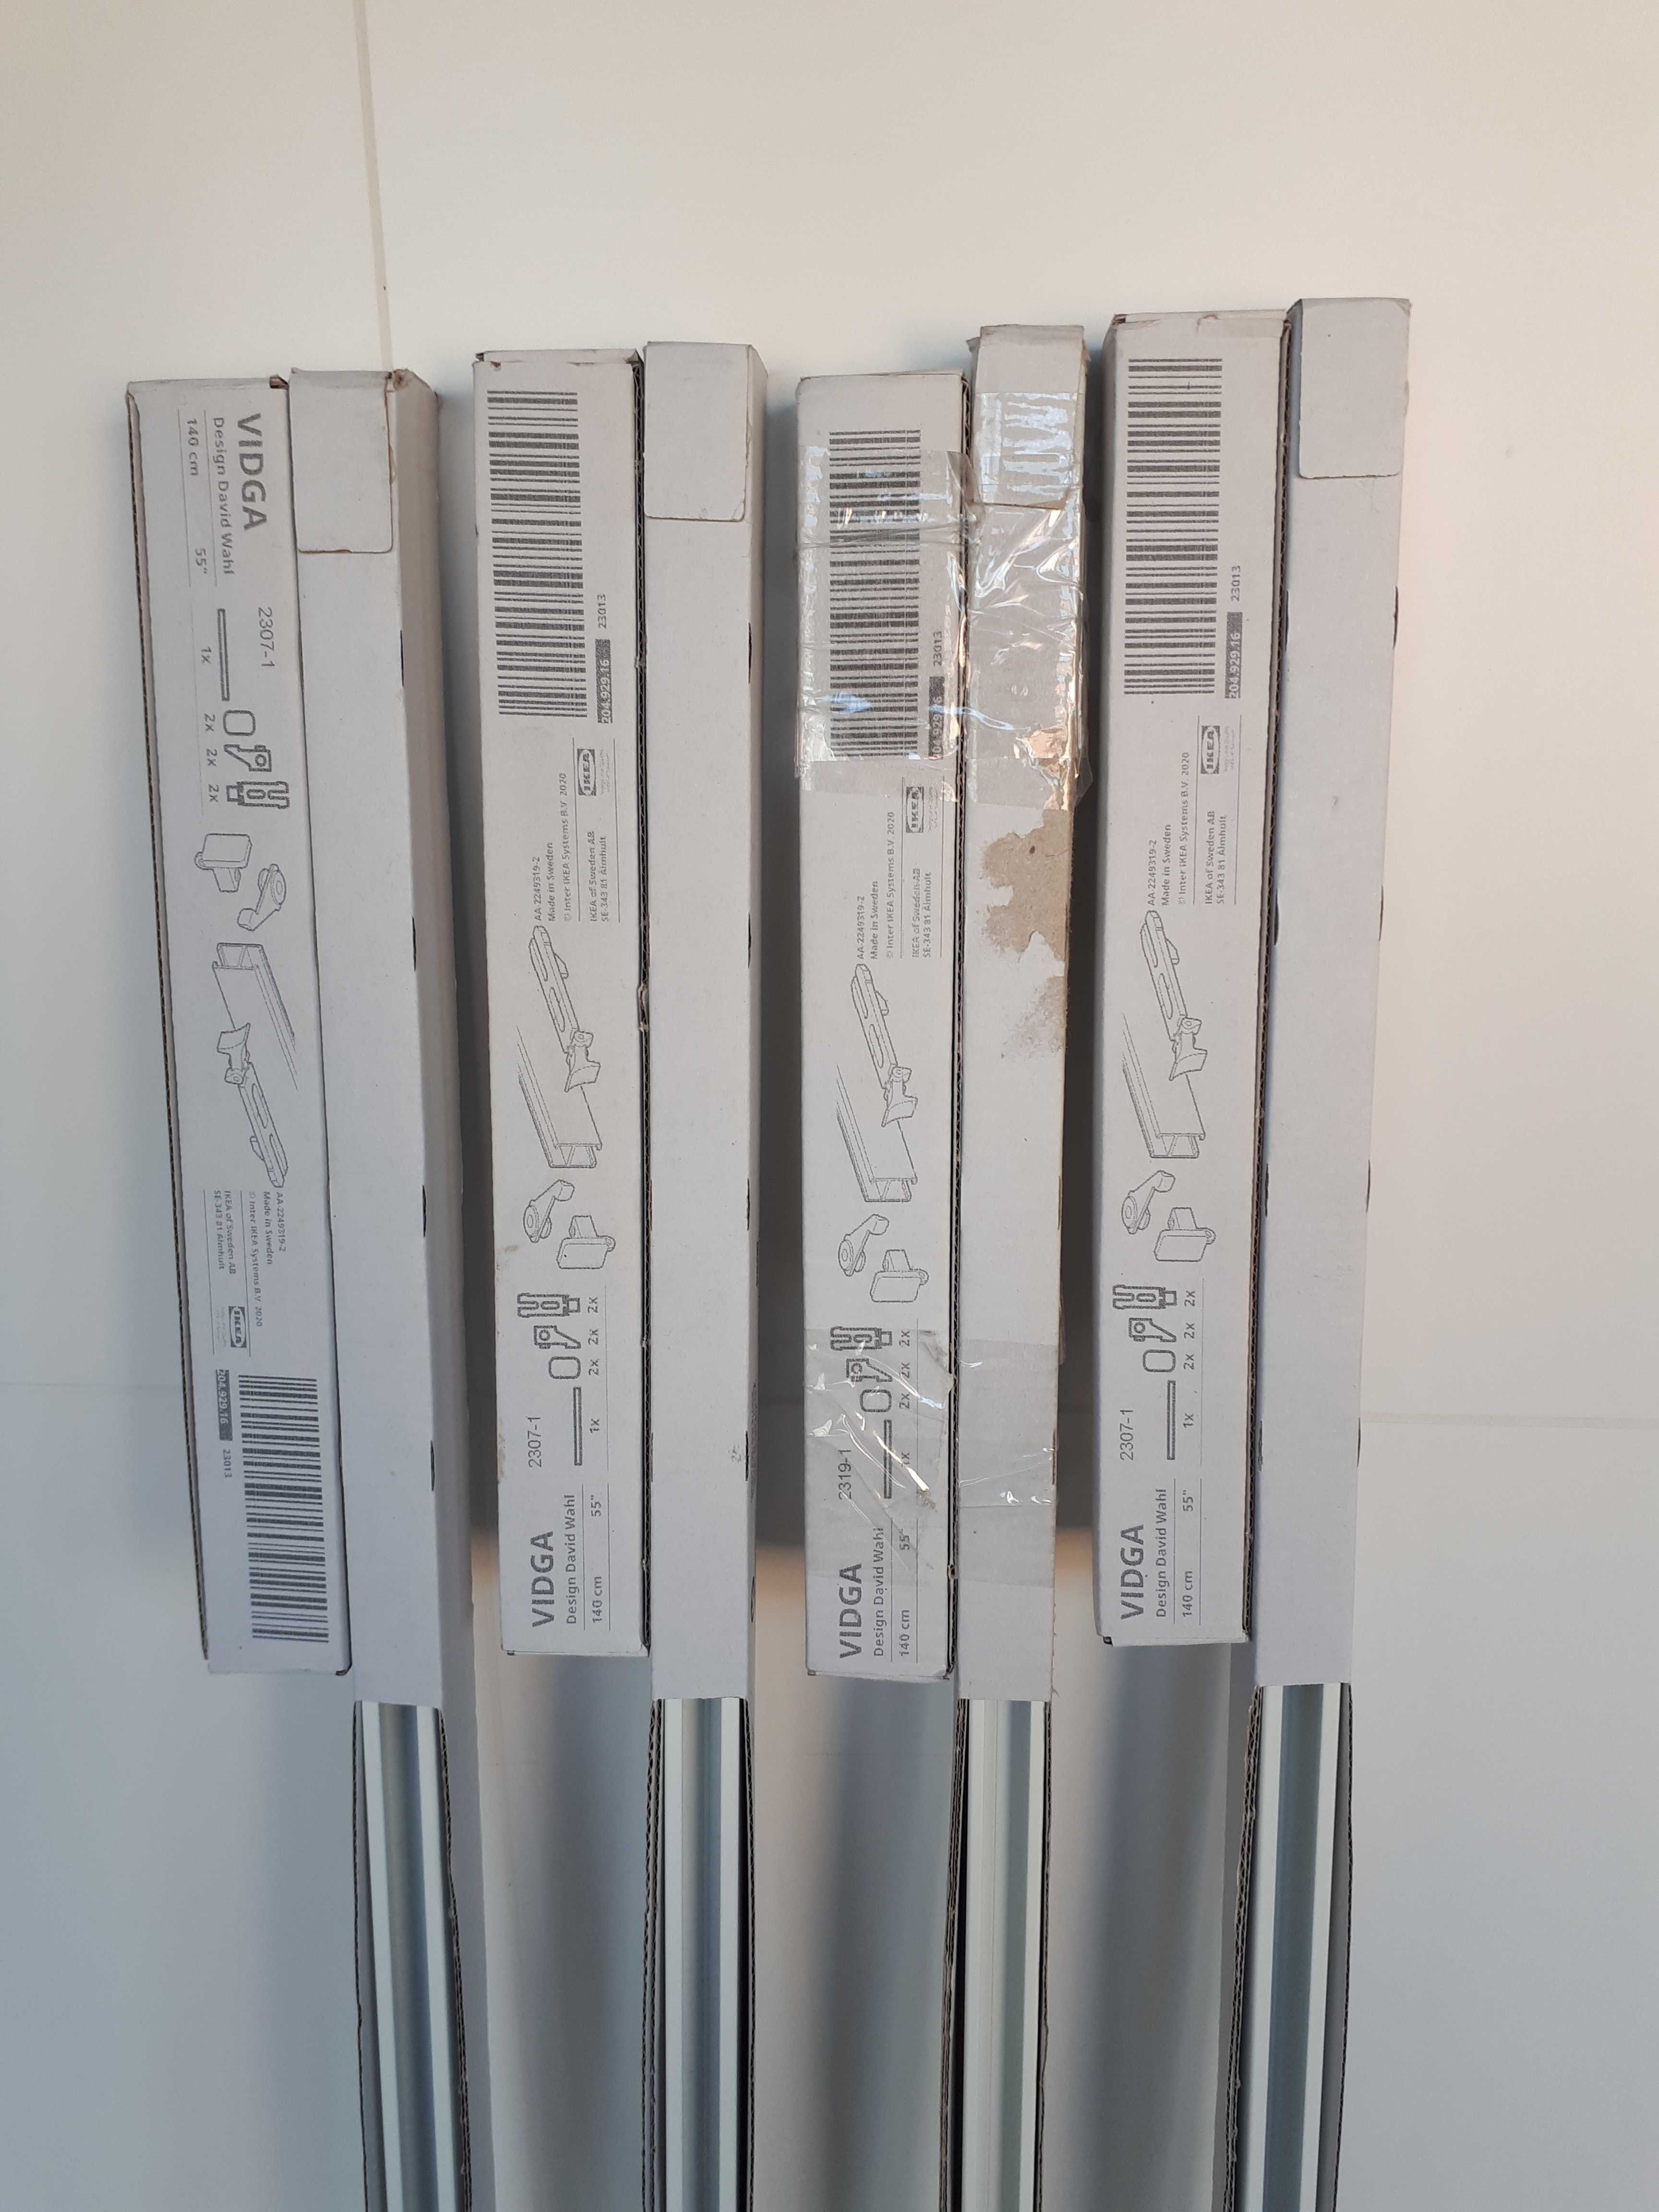 4 Calhas novas de cortinas VIDGA do IKEA 1,40m e 12 ferragens de 6cm